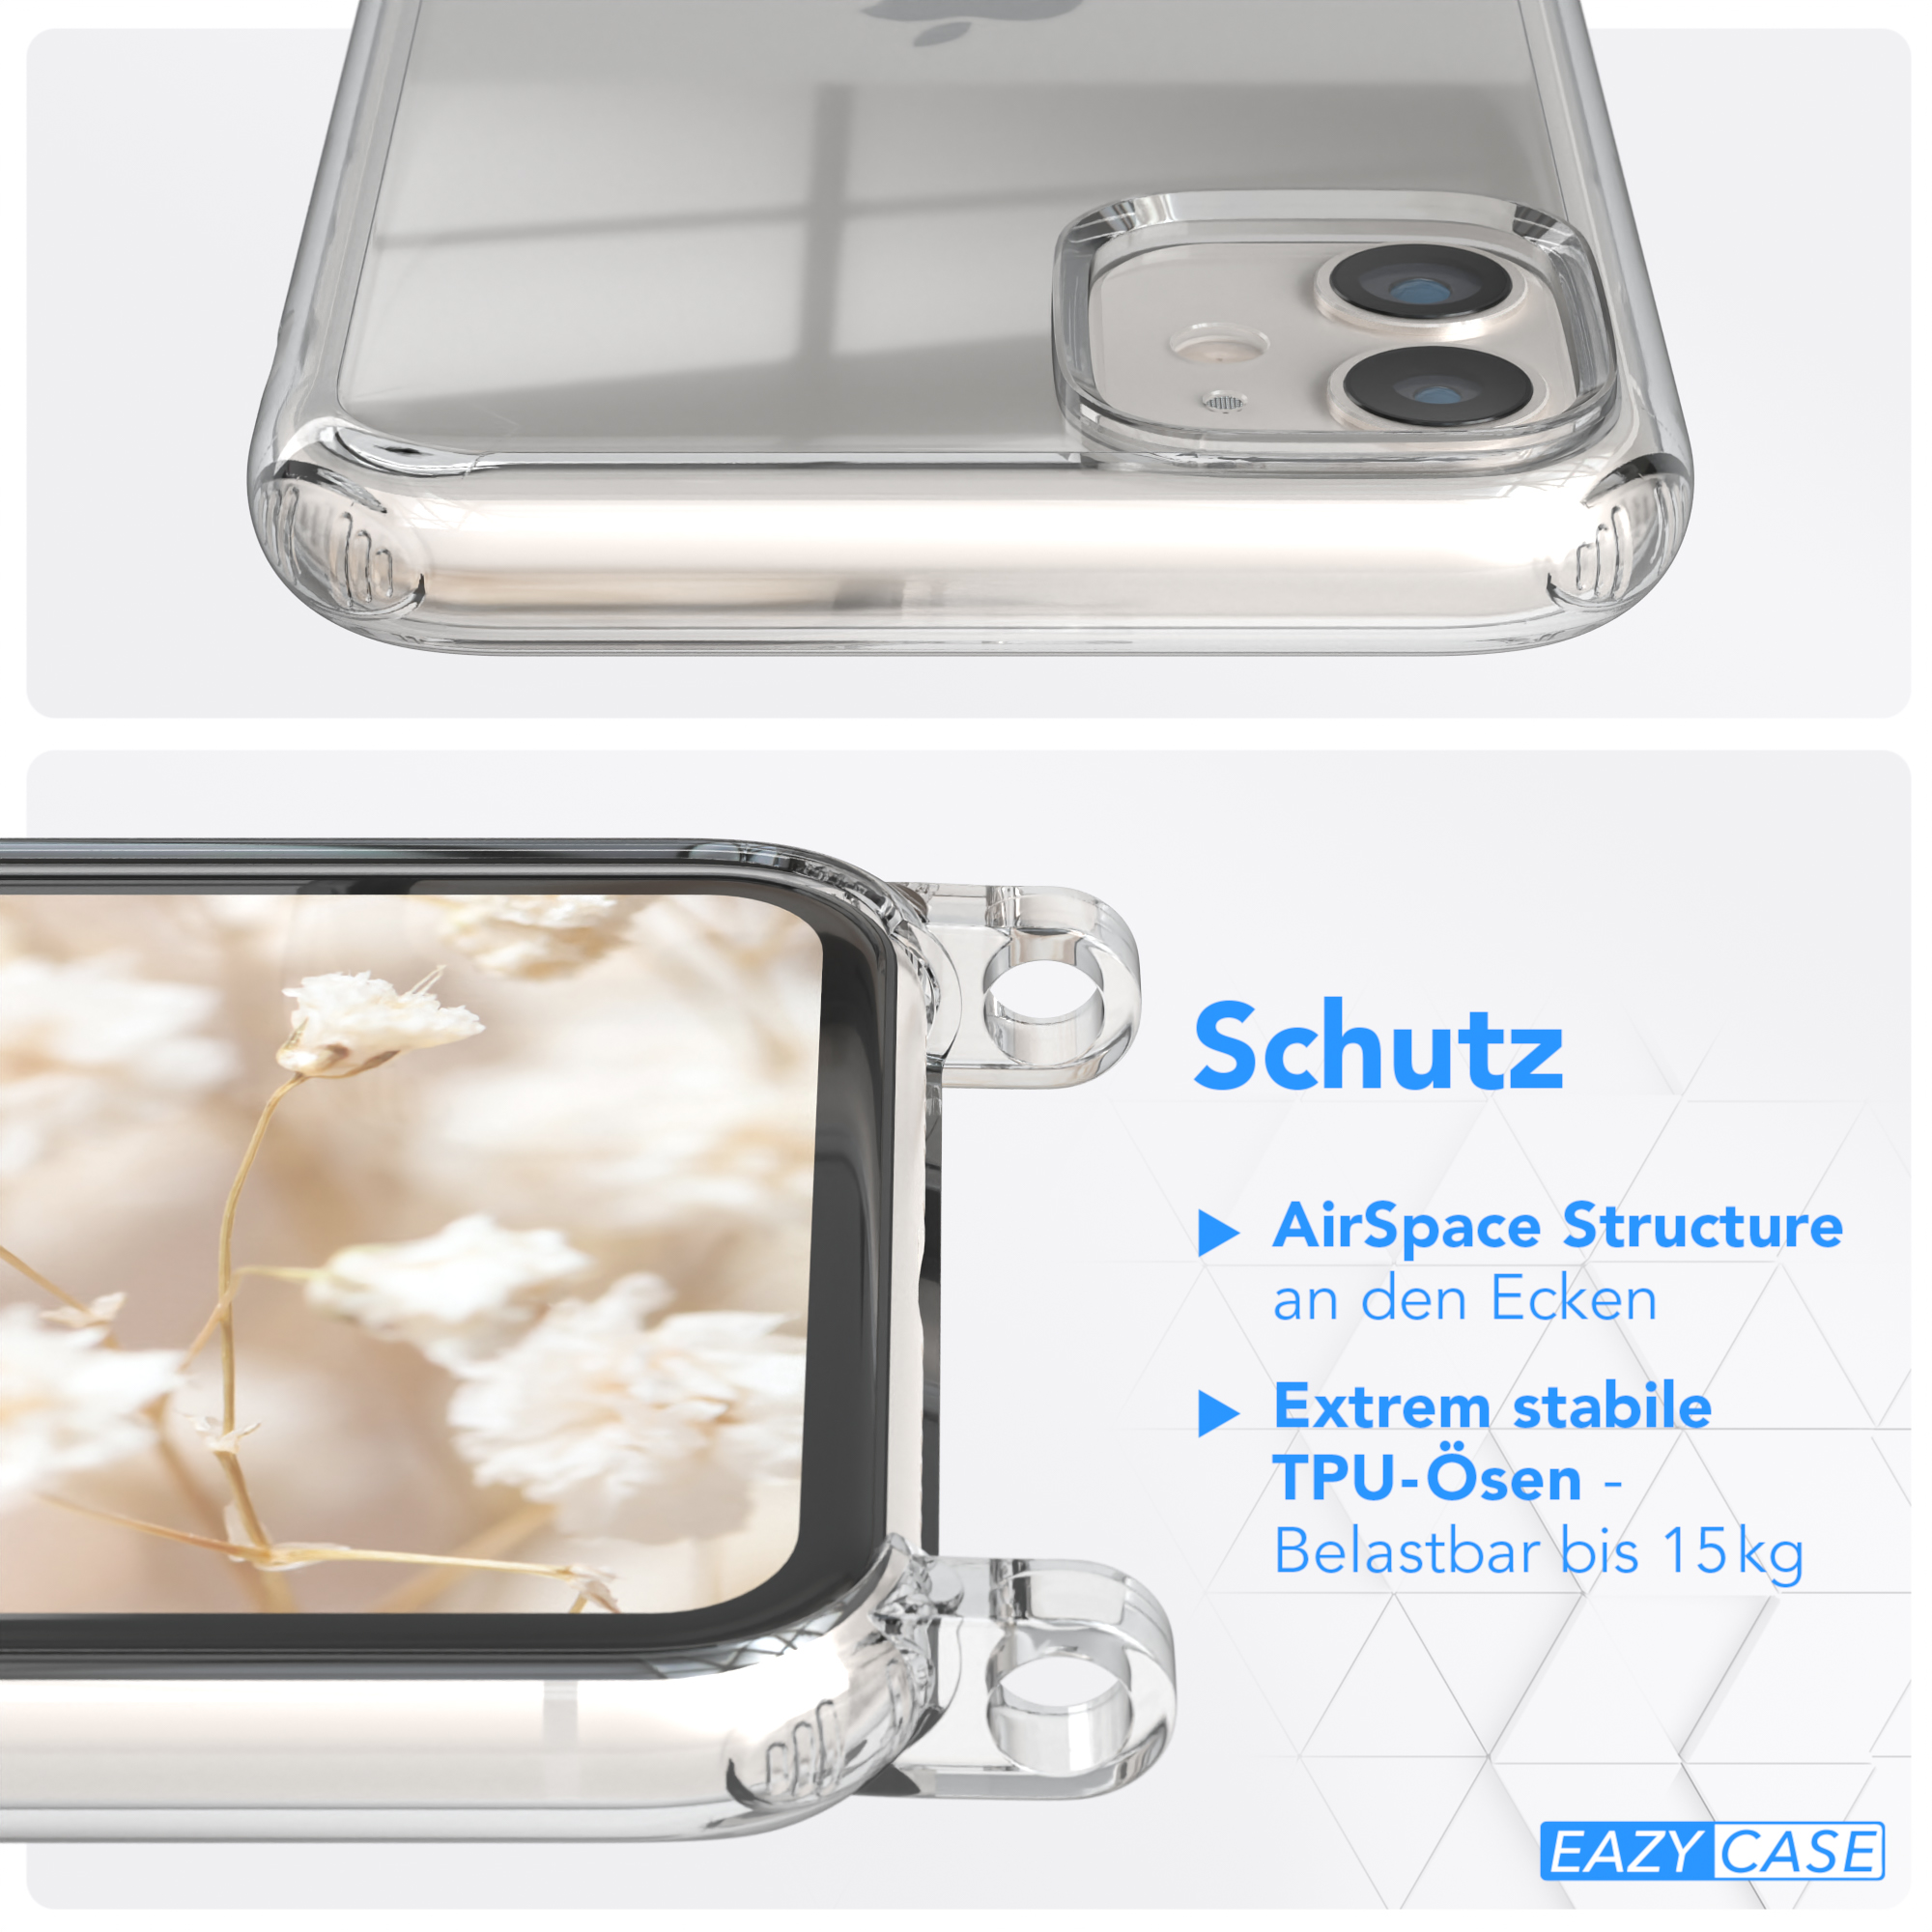 / EAZY Transparente iPhone Apple, Handyhülle Kordel CASE 11, mit Boho Umhängetasche, Blau Weiß Style,